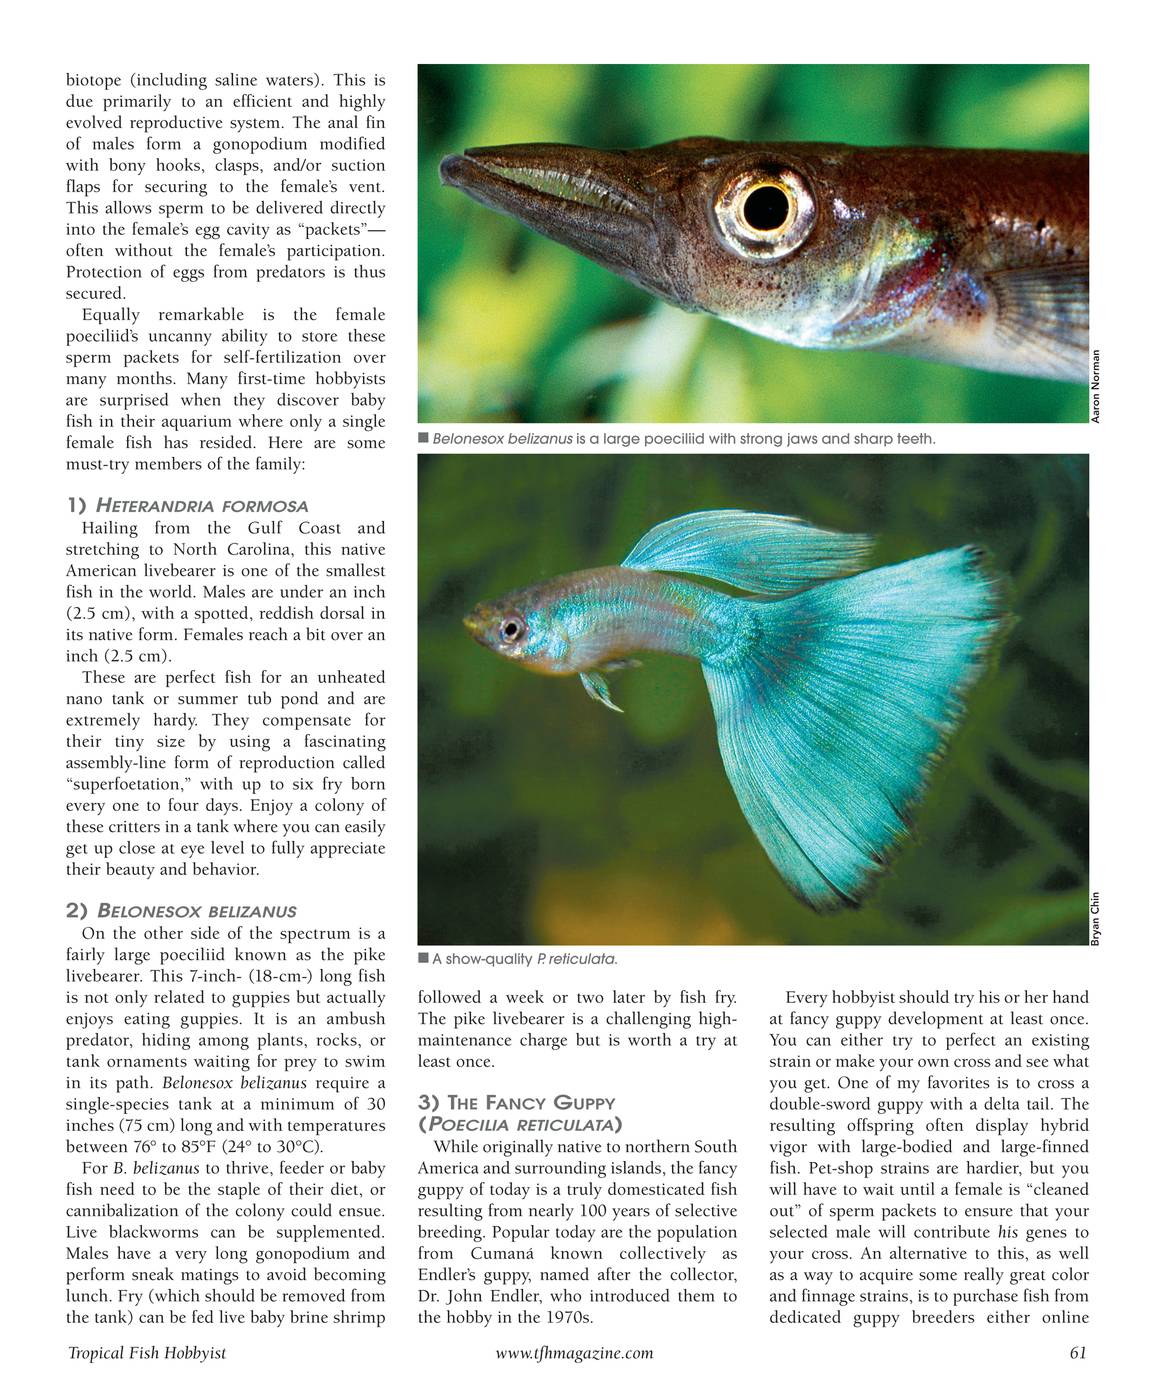 Tropical Fish Hobbyist - May 2015 - page 61